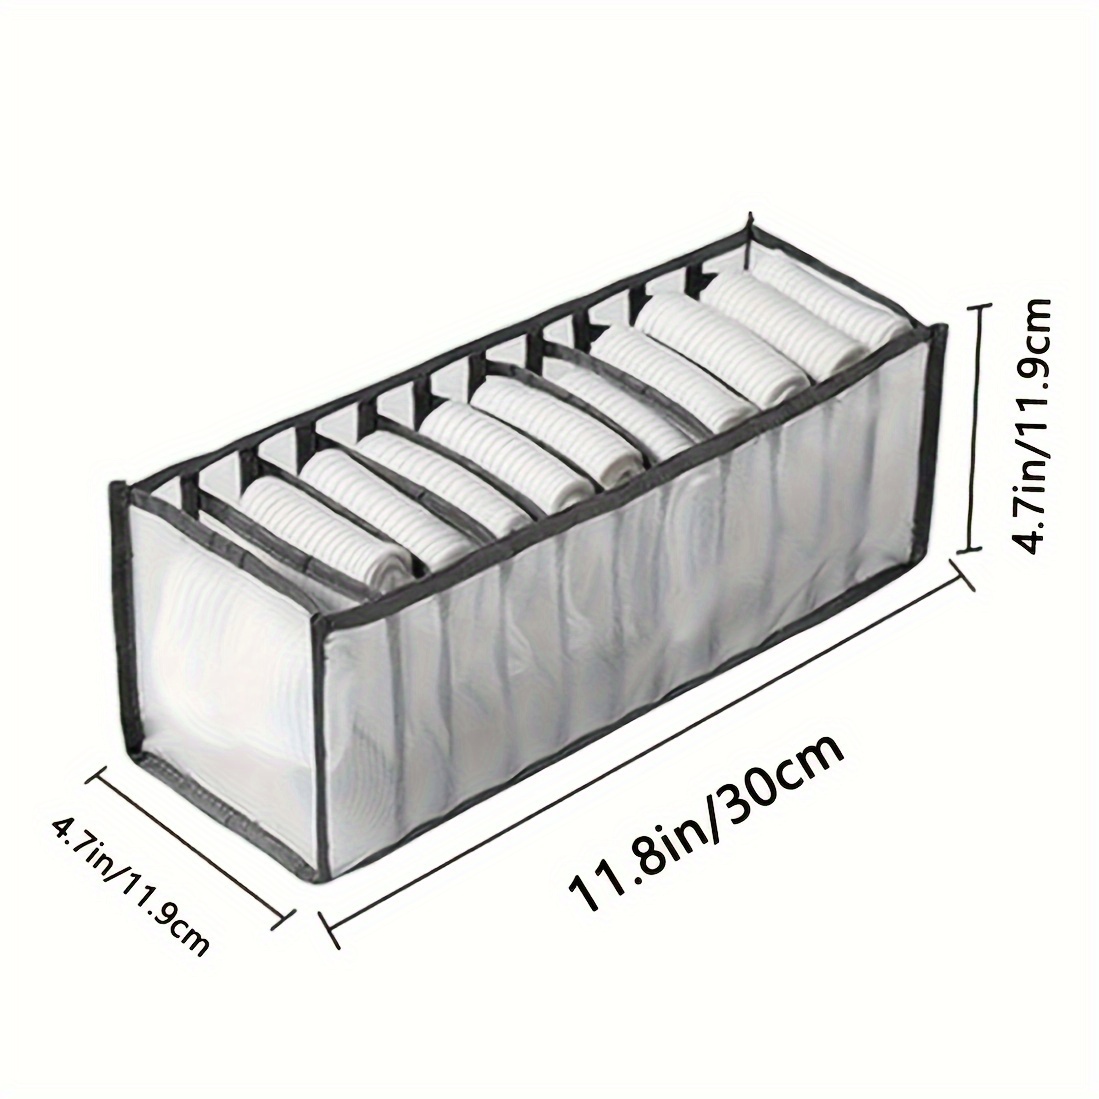 Caja de almacenamiento con compartimentos para ropa interior y calcetines -  Clikoutlet